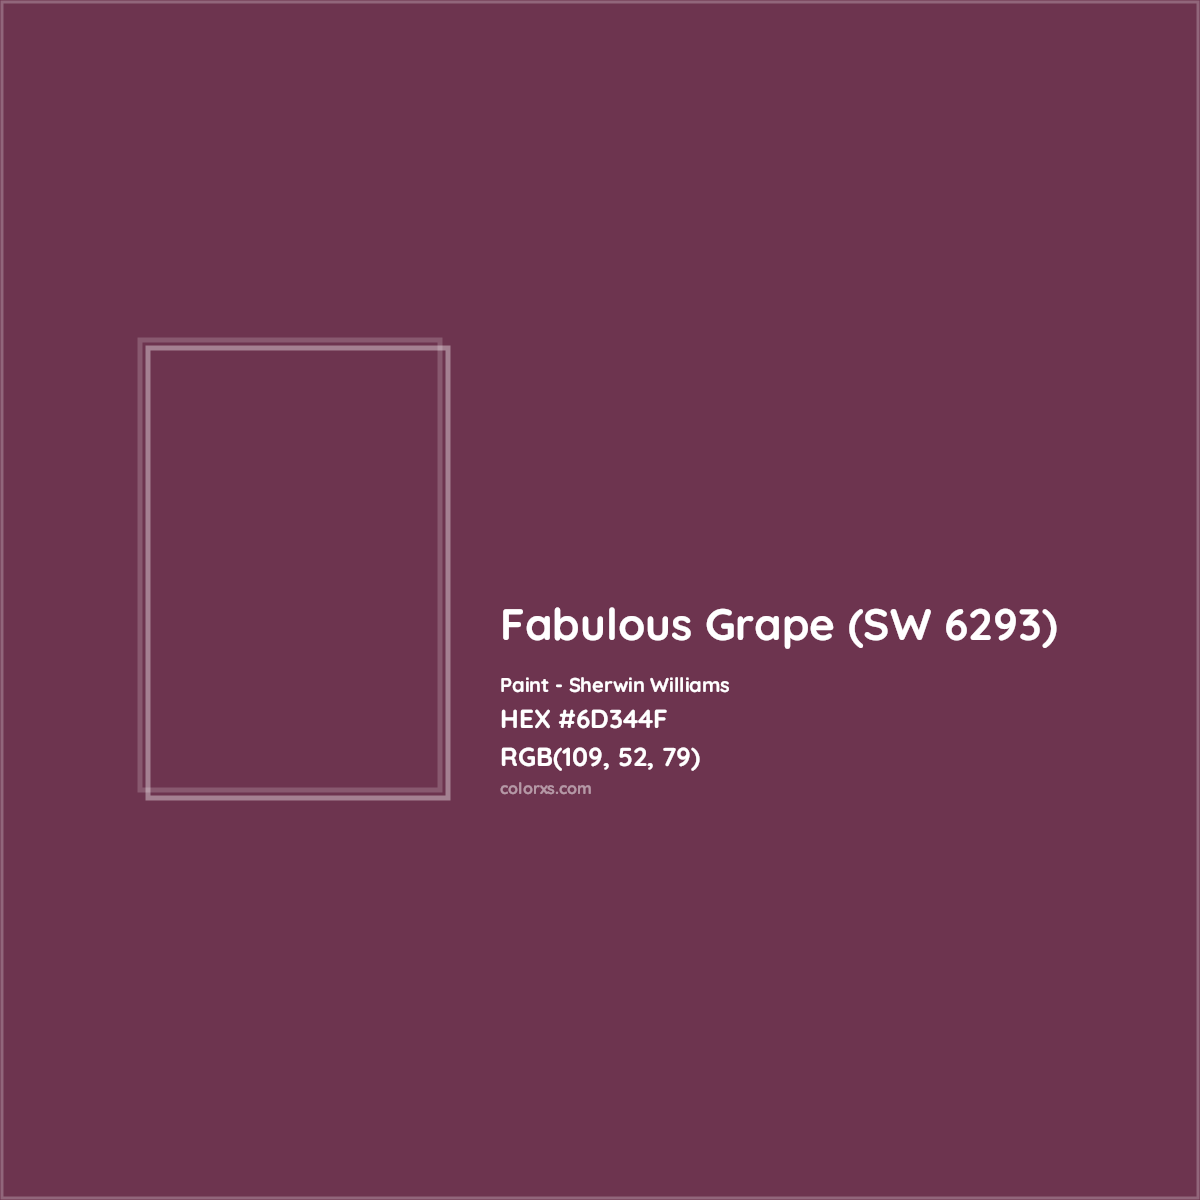 HEX #6D344F Fabulous Grape (SW 6293) Paint Sherwin Williams - Color Code